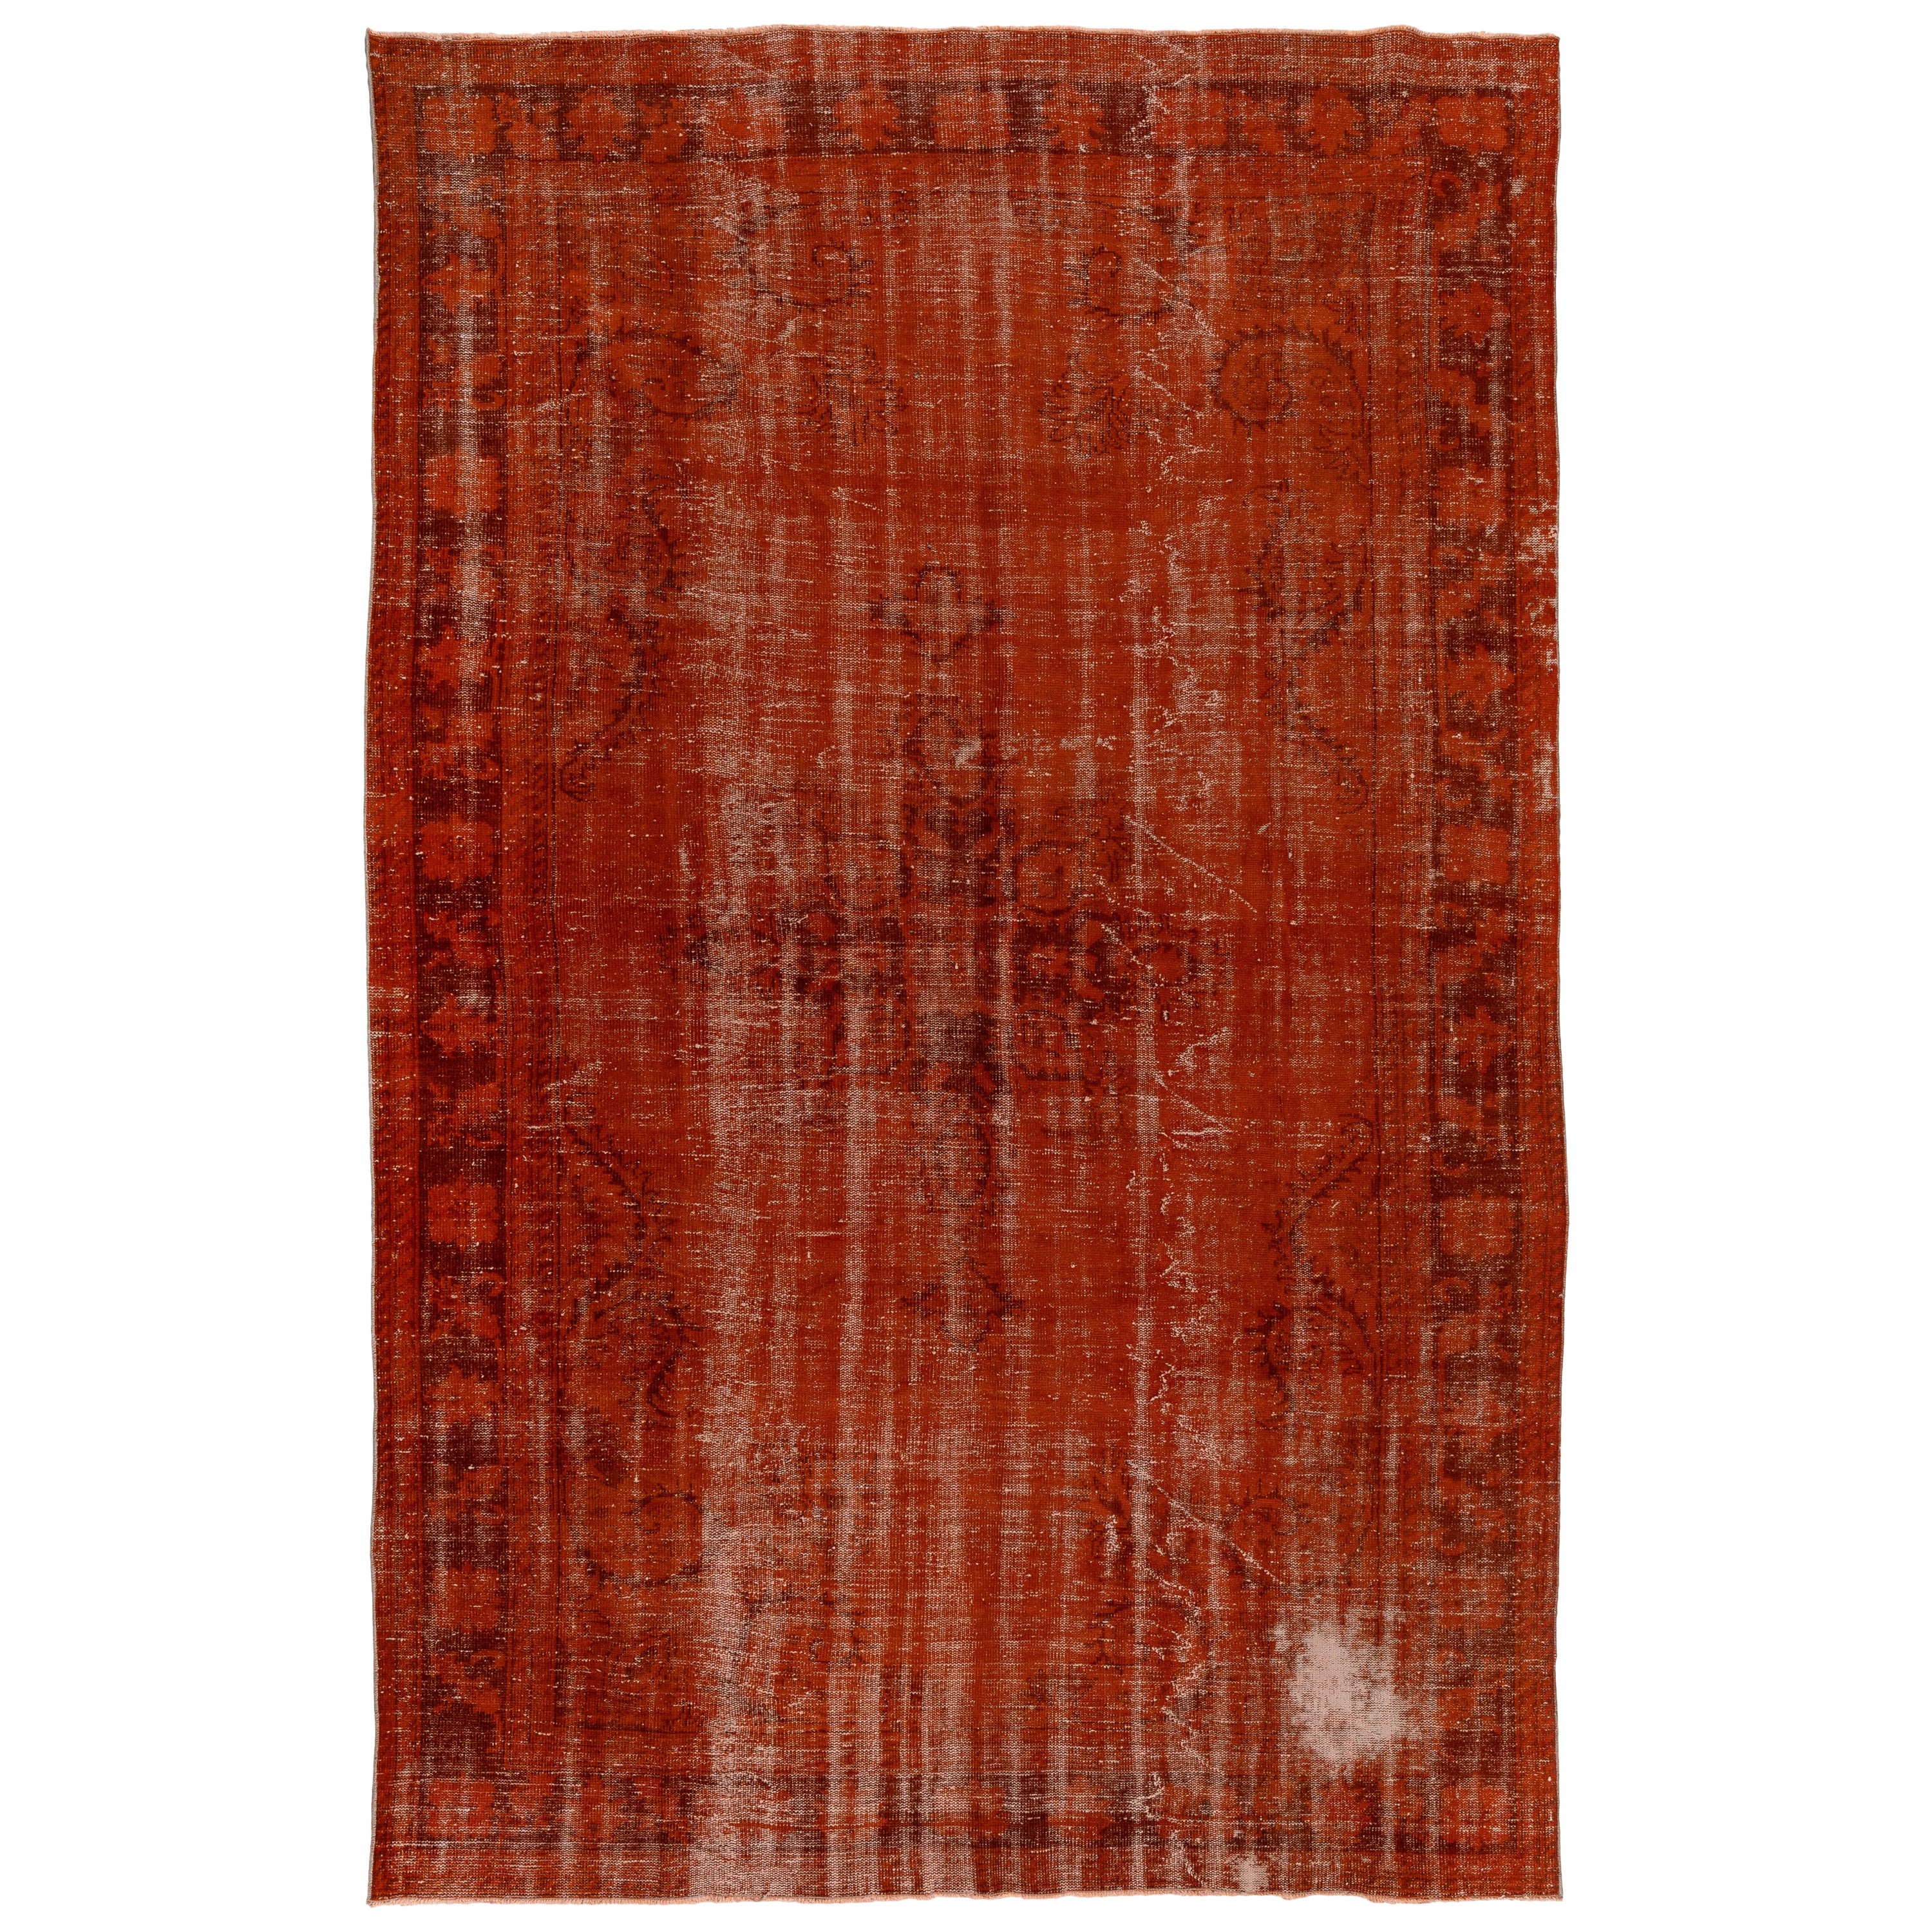 7.6x11.4 Ft Handgefertigter türkischer Teppich in Orange. Mid-Century Distressed-Teppich